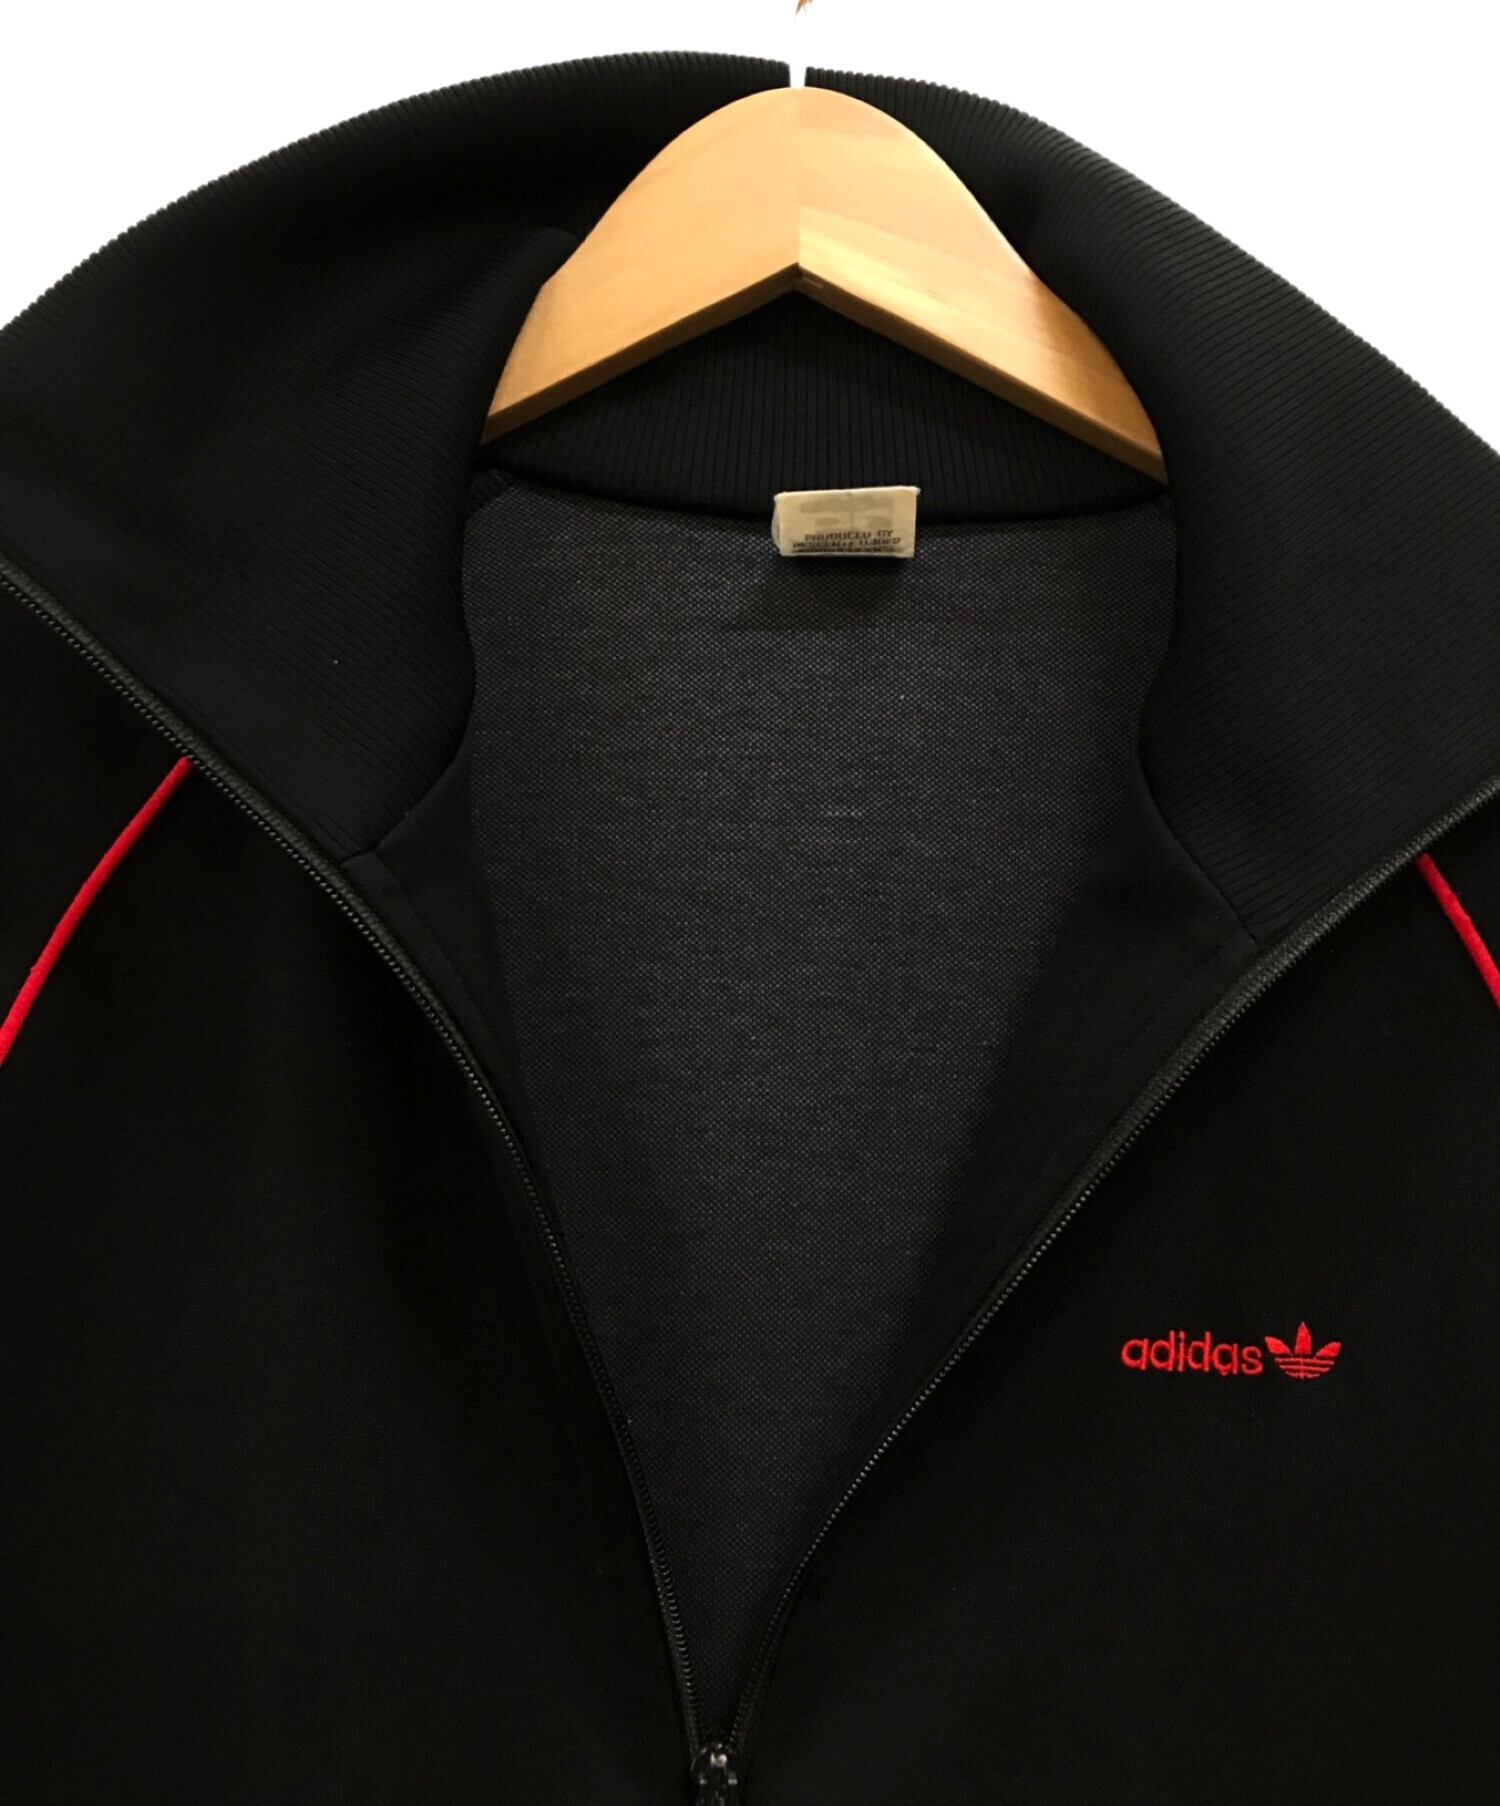 adidas (アディダス) ハイネックトラックジャケット ブラック×レッド サイズ:M